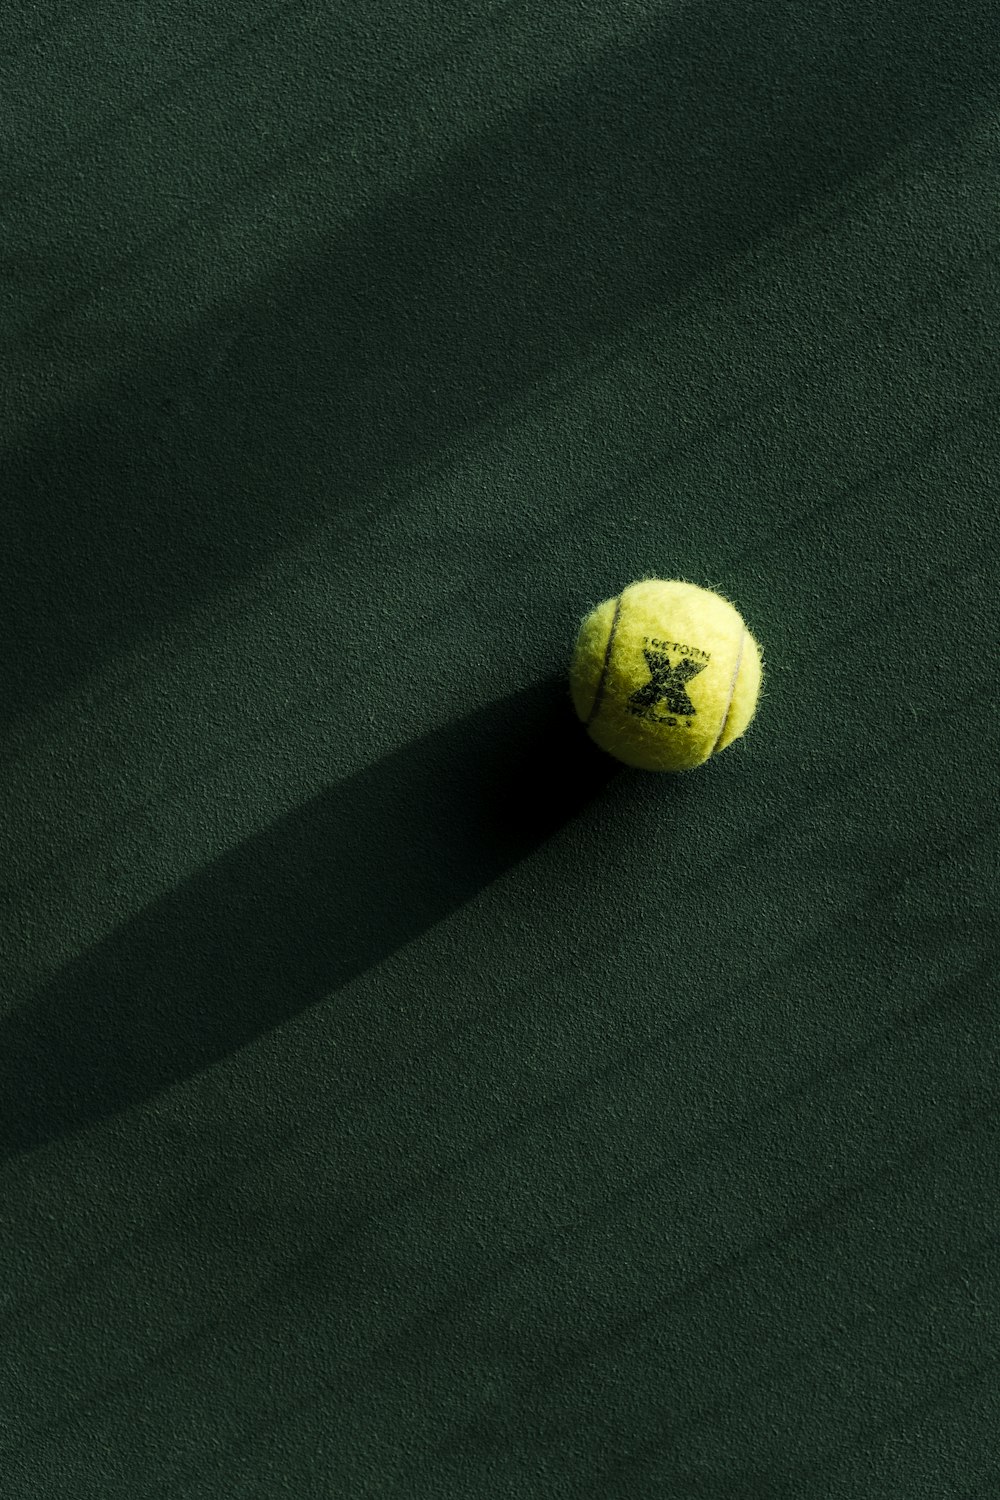 Una pelota de tenis en una cancha verde con una sombra